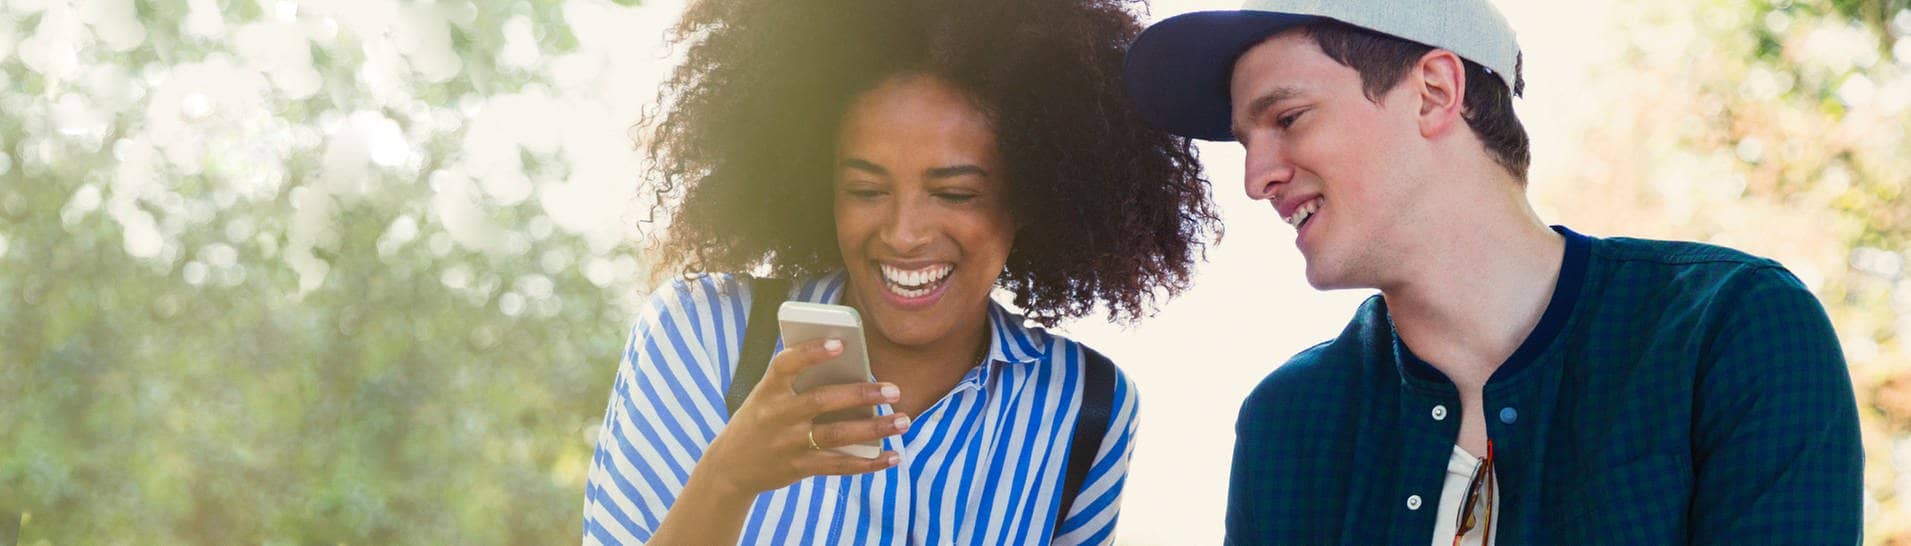 Zwei fröhliche Menschen lesen gute Nachrichten auf einem Smartphone (Foto: Adobe Stock, Koto)